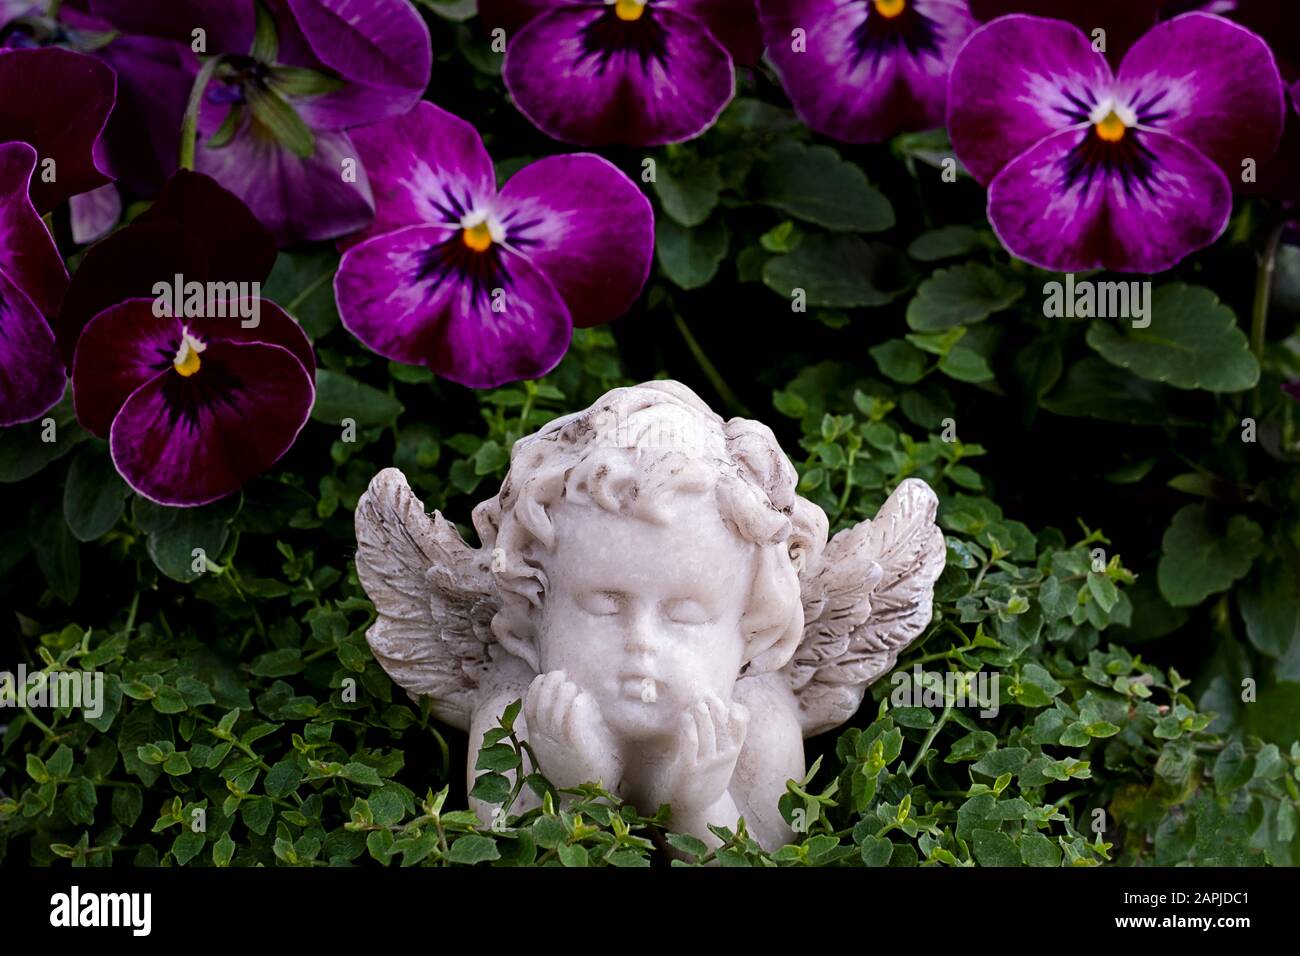 piccola figura di un angelo che giace e sogna tra la pianta viola e verde Foto Stock